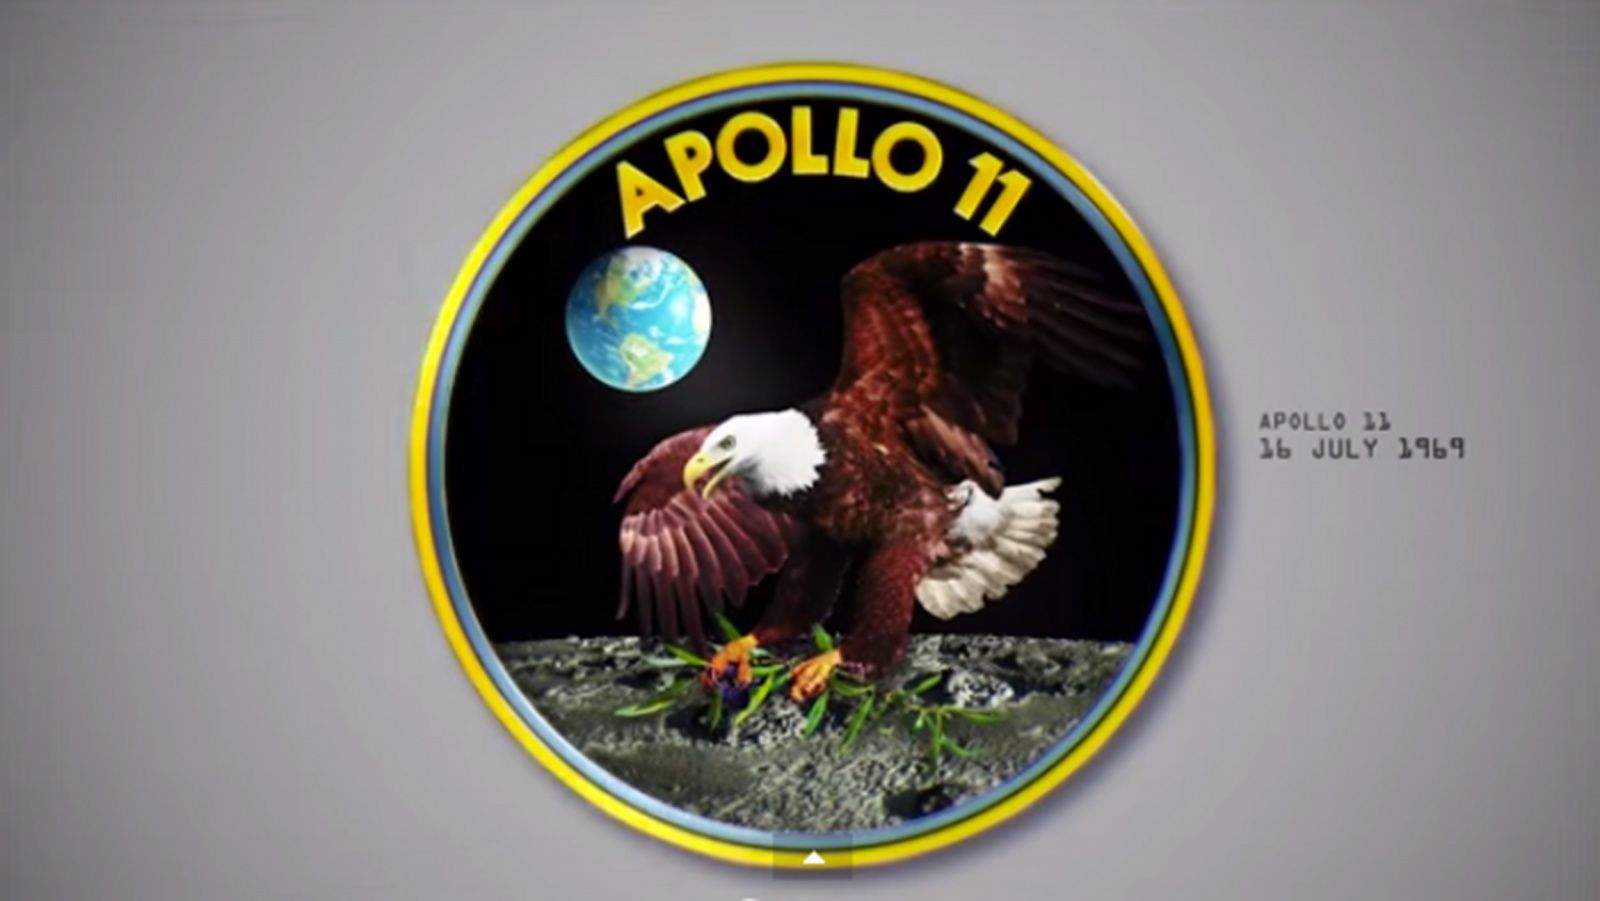 The Apollo 11 mission patch. Photo: NASA/Neil F. Smith/YouTube